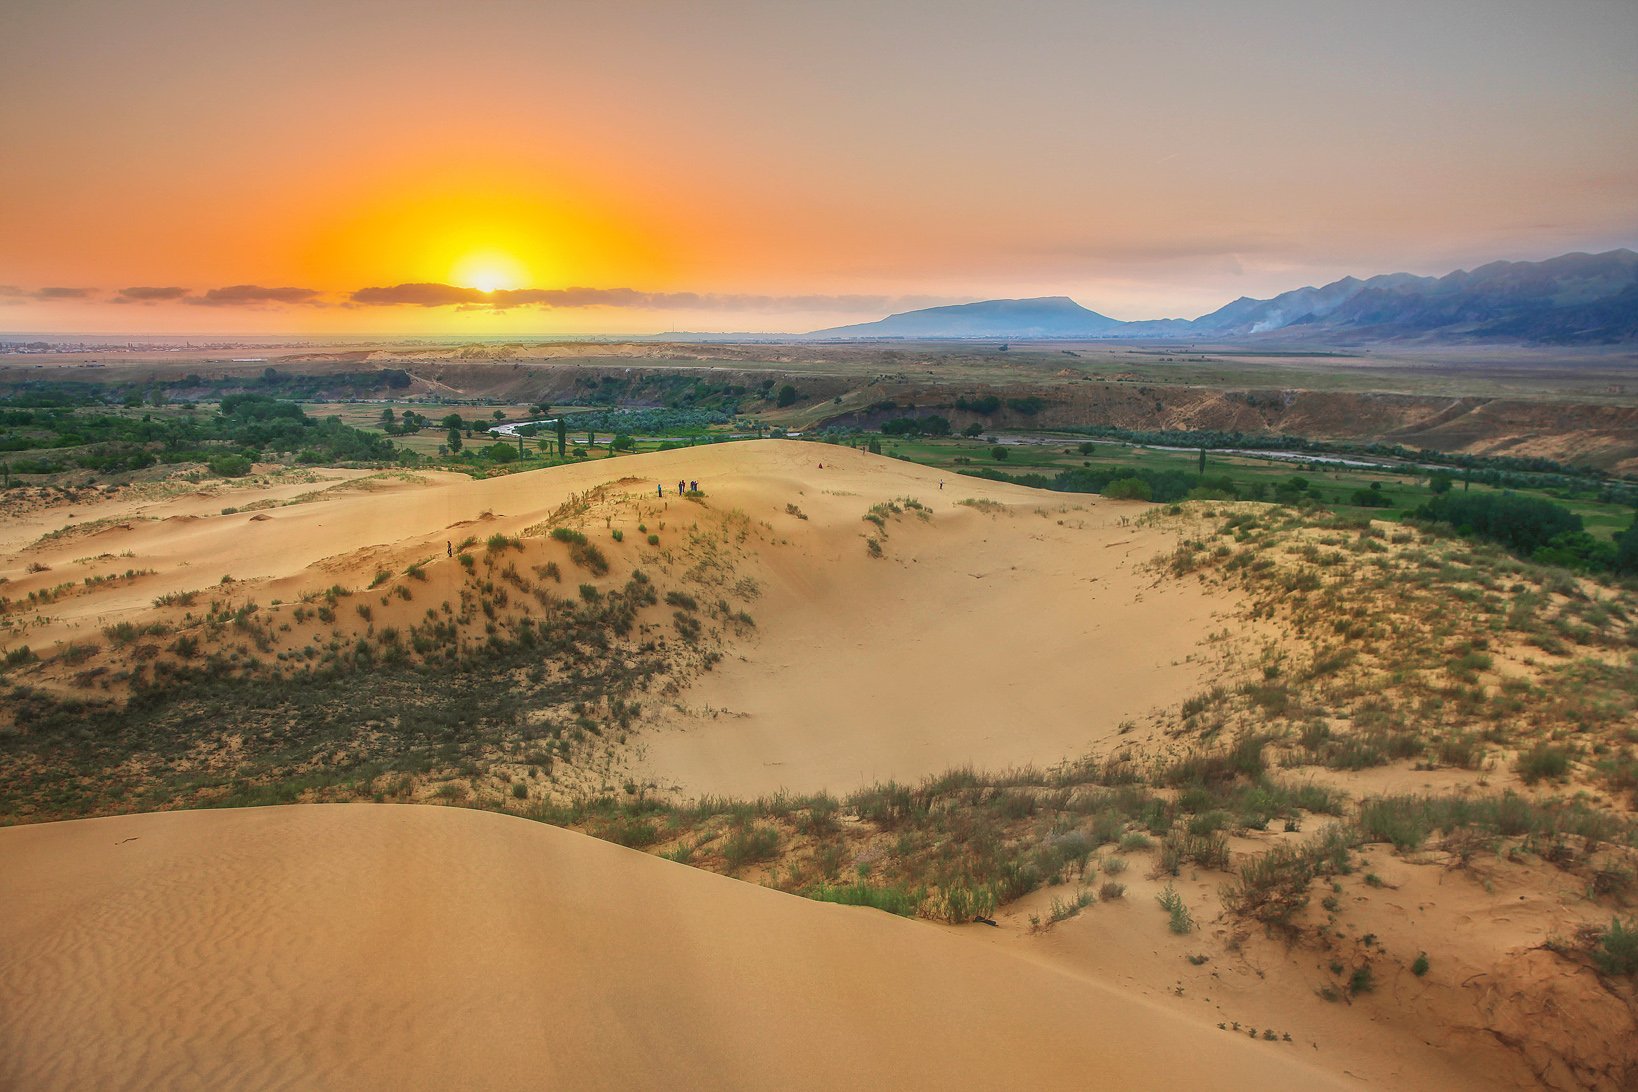 сары кум,песок,гора.природа,пустыня,дагестан.рассвет, Marat Magov